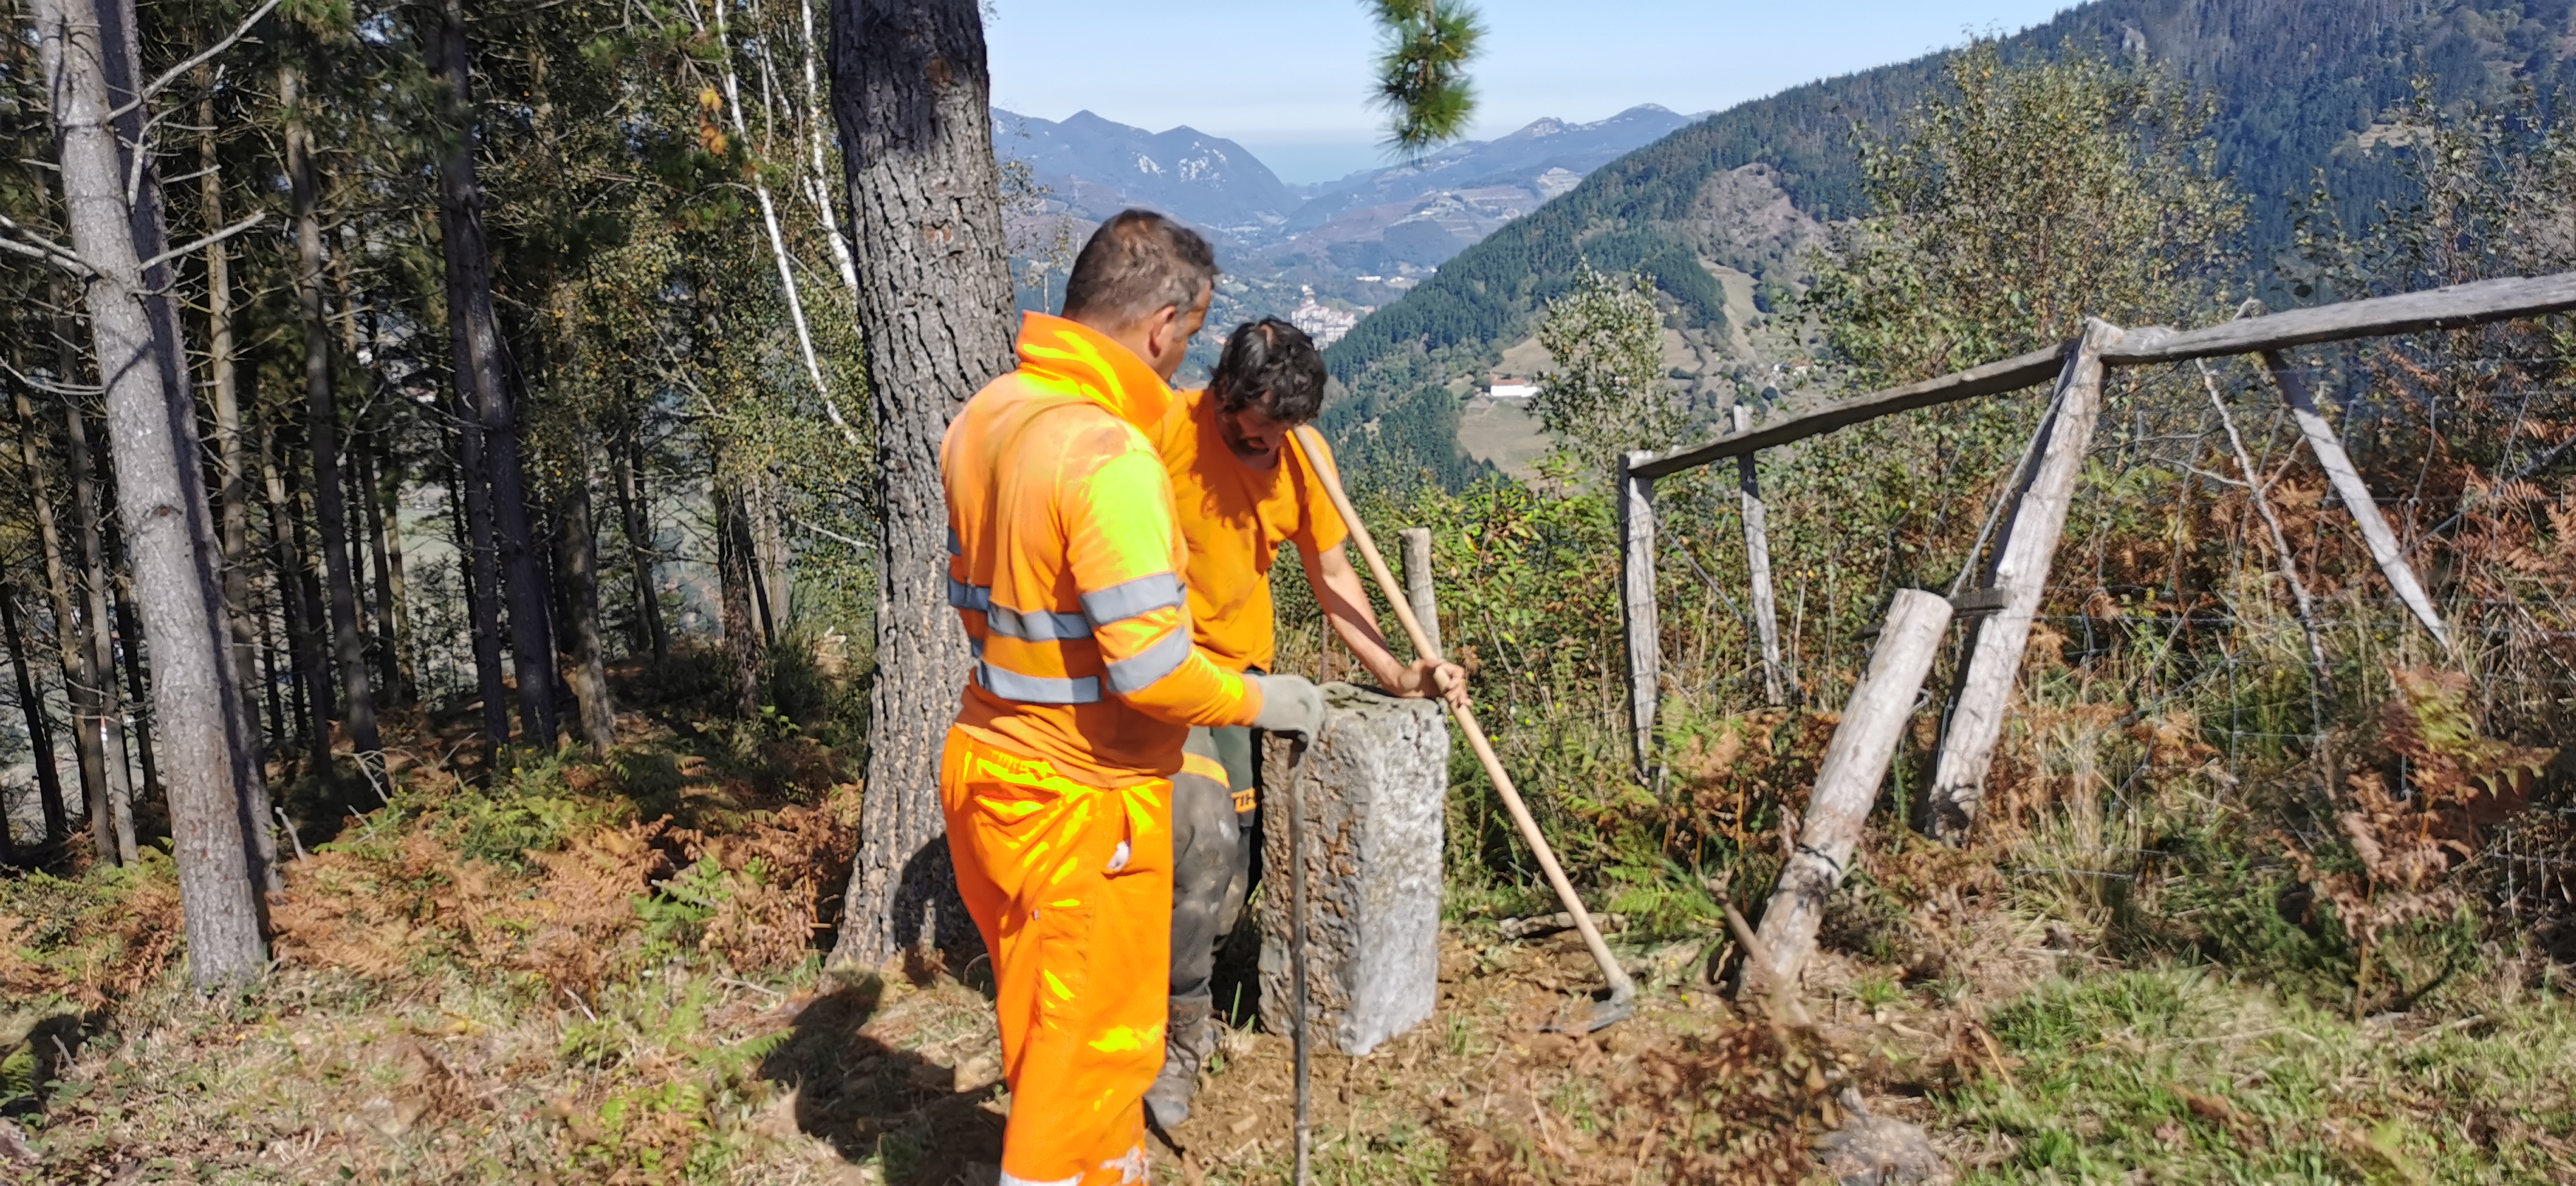 La reparación de los mojones en los límites de Eibar, Soraluze, Bergara y Elgeta se realizó los días 4 y 5 de octubre